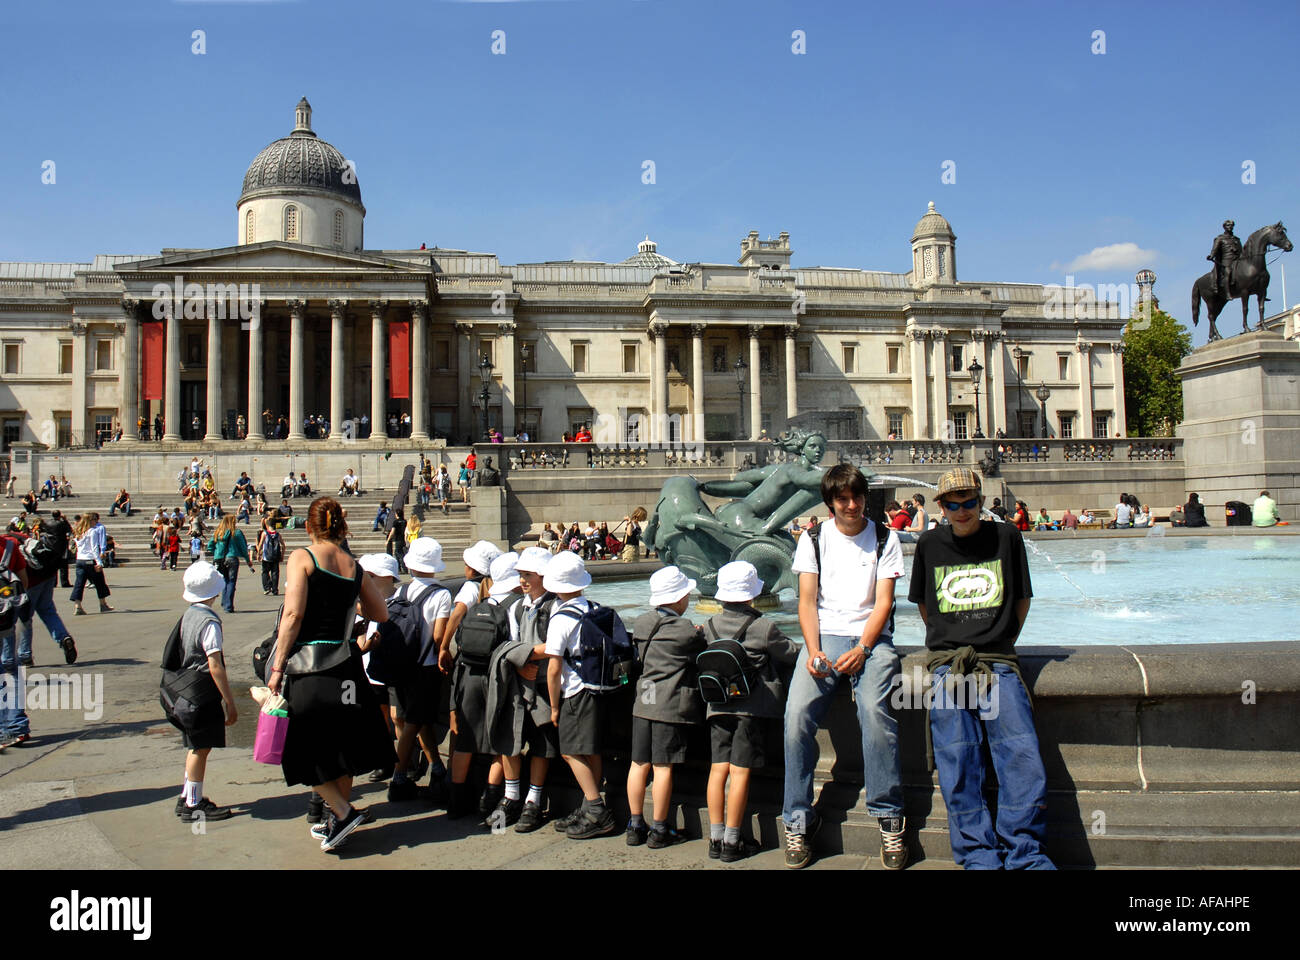 Les touristes profiter de Trafalgar Square, bordée par la National Gallery et St Martin in the Fields Church. Londres en Angleterre. Uk 2006 Banque D'Images